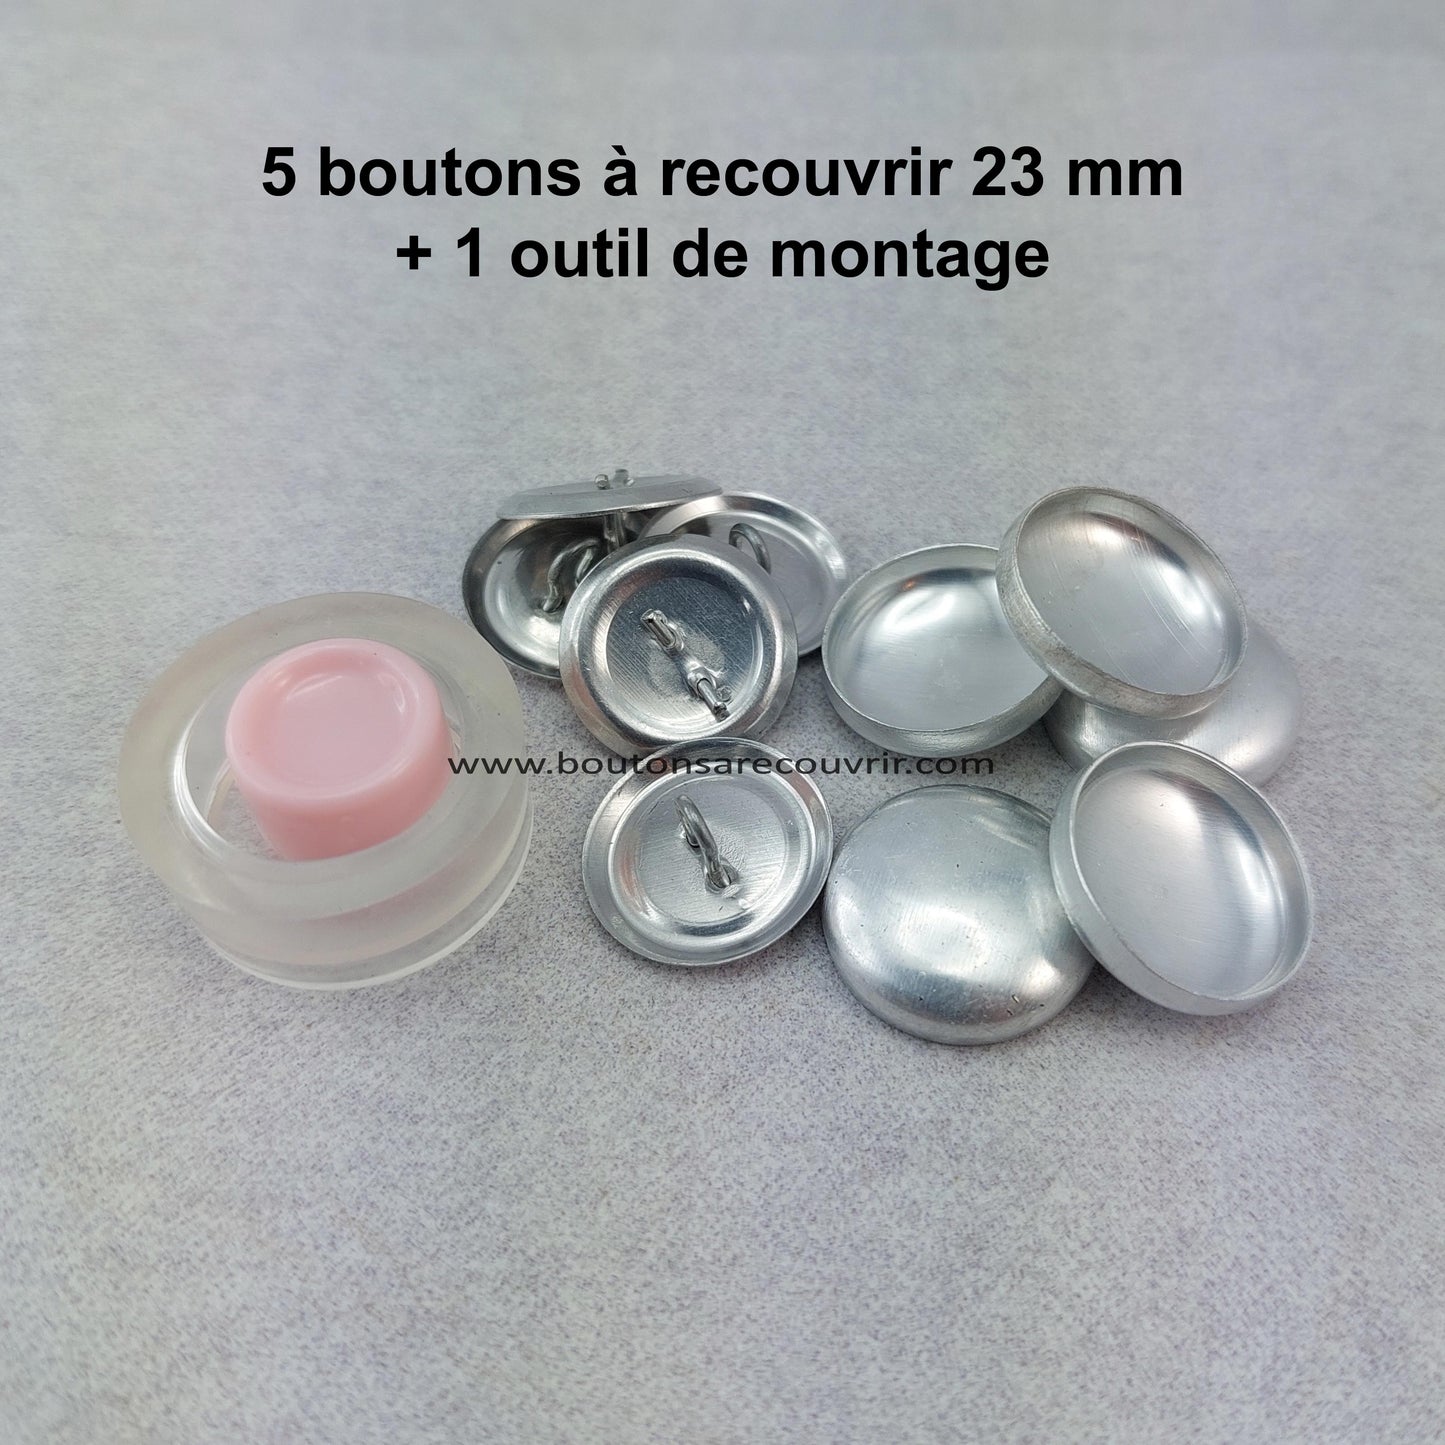 5 boutons à recouvrir 23 mm avec outil de montage